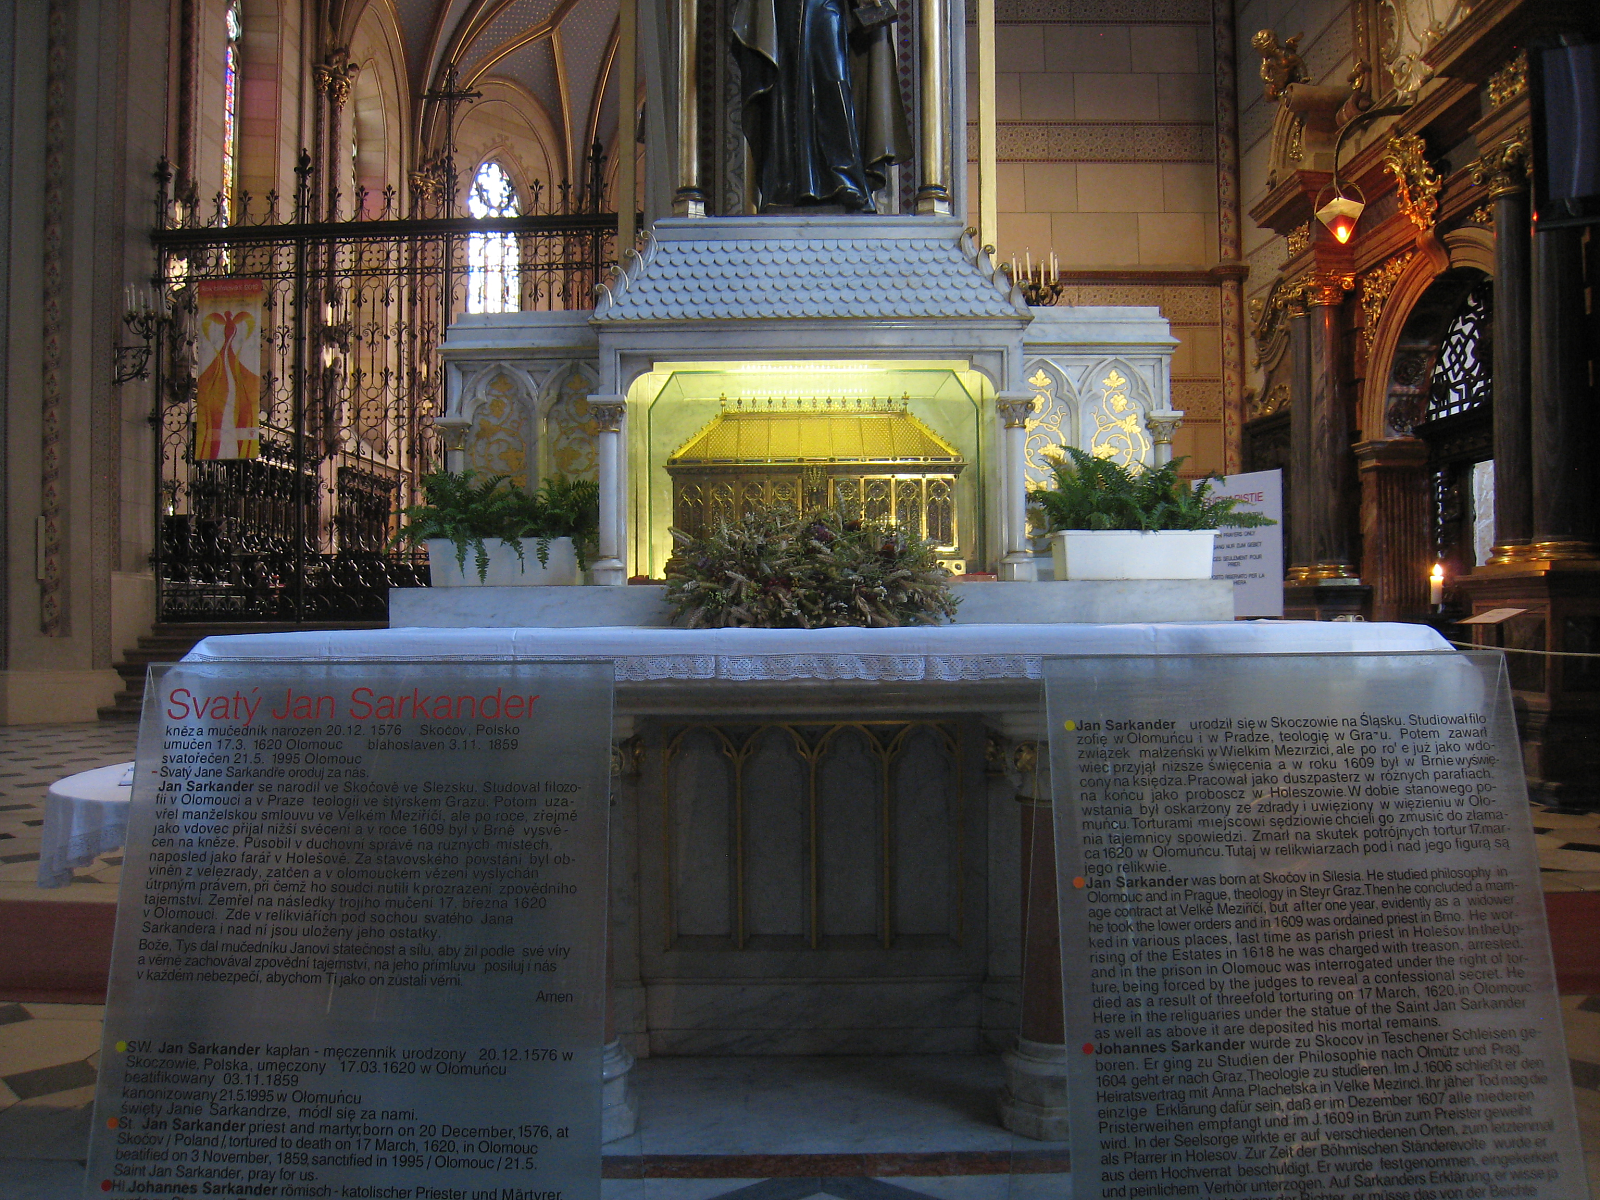 Relikwie św. Jana Sarkandra w katedrze w Ołomuńcu - Avemundi, CC BY-SA 3.0 www.creativecommons.org, via Wikimedia Commons